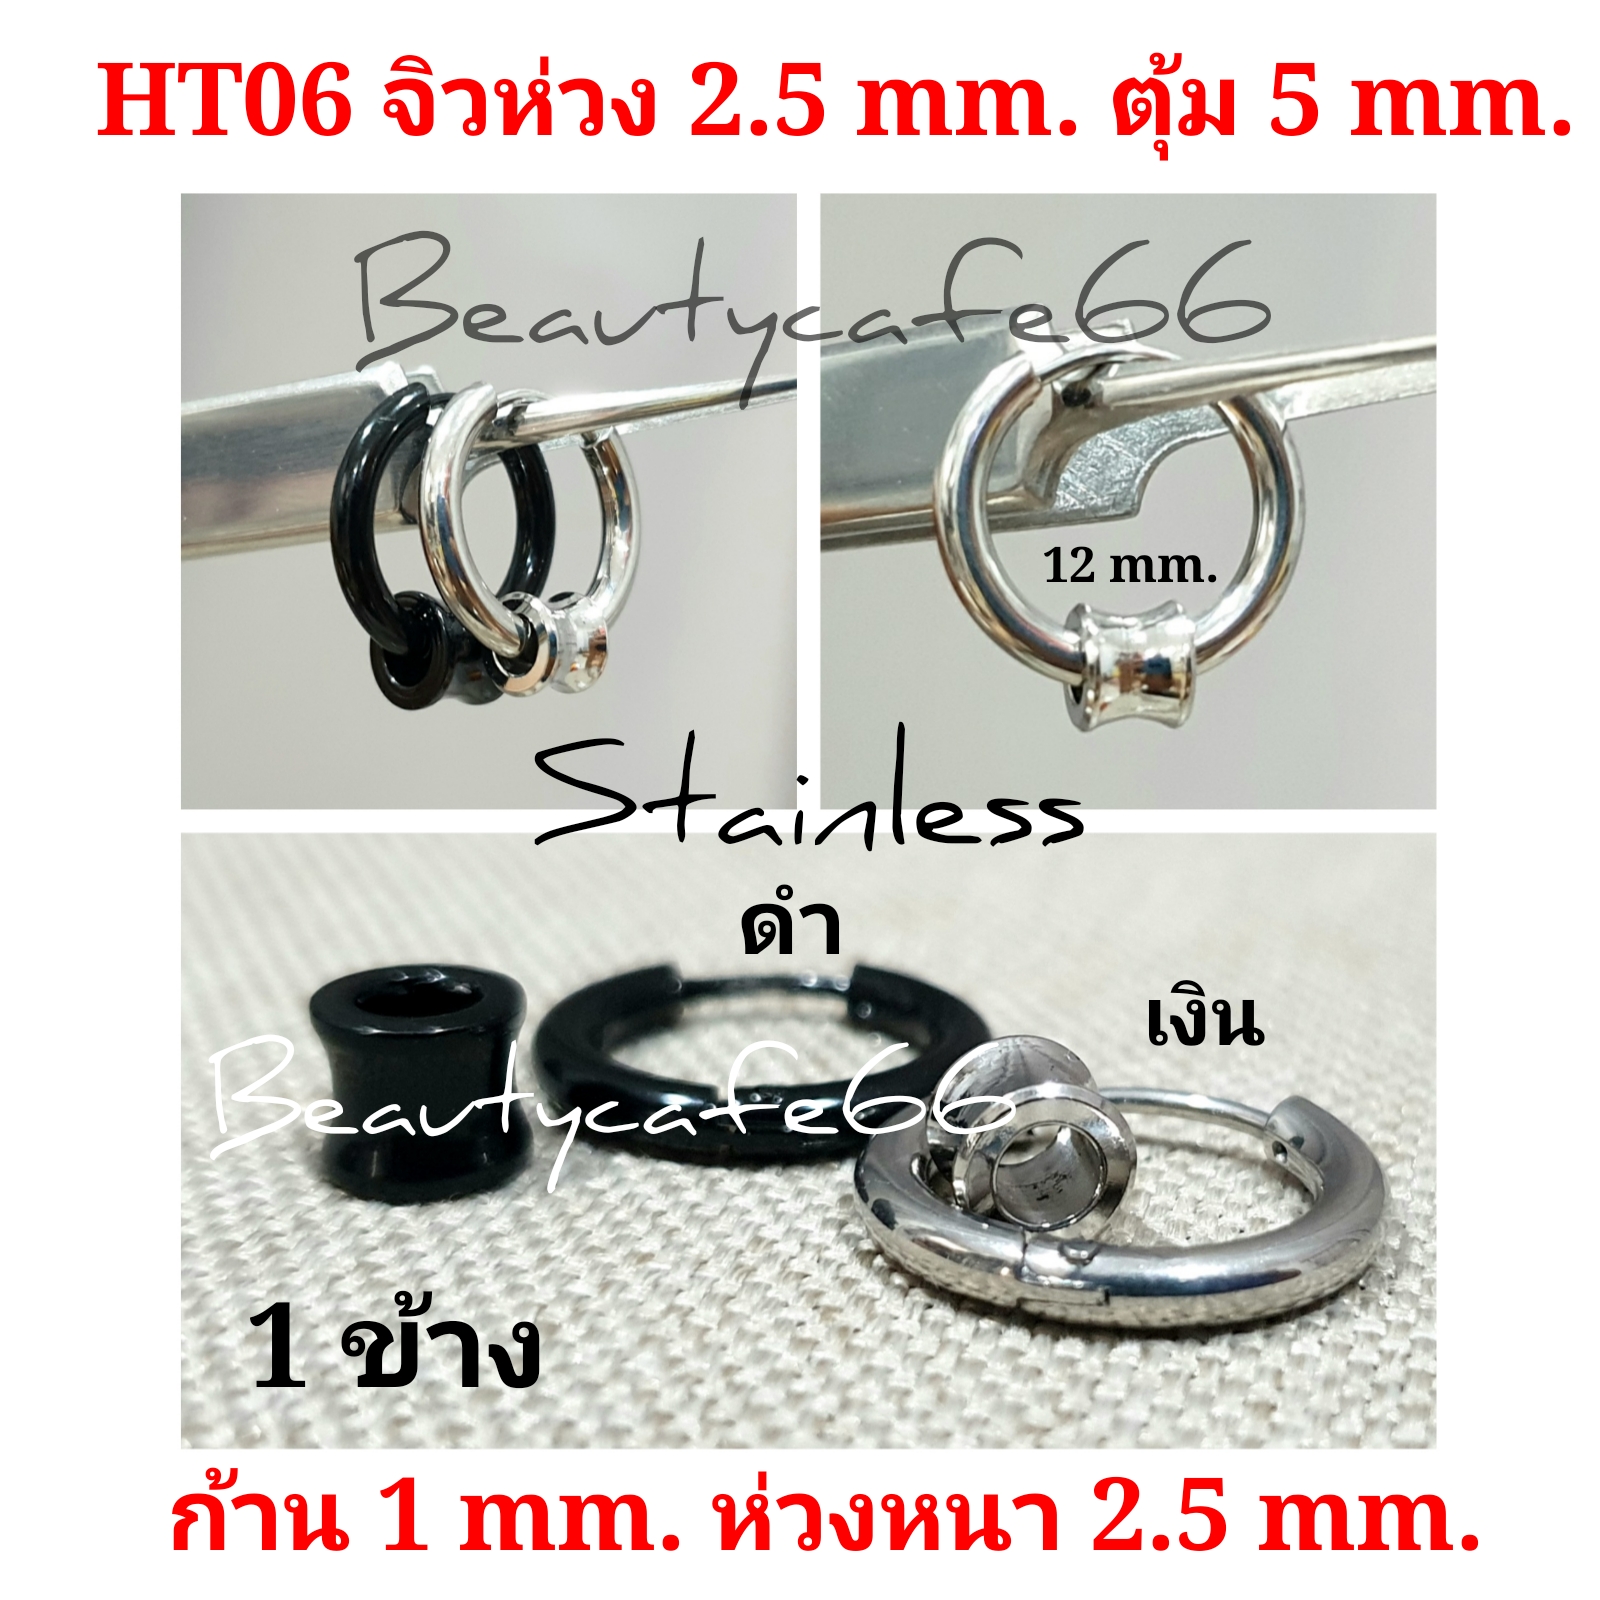 (ร้านไทย ส่งไว) HT06 จิวหู ต่างหูห่วง สแตนเลส Stainless หนา 2.5 mm. มีตุ้มเลสเว้ากลาง 5 mm. สีดำ/สีเงิน *1 ข้าง*